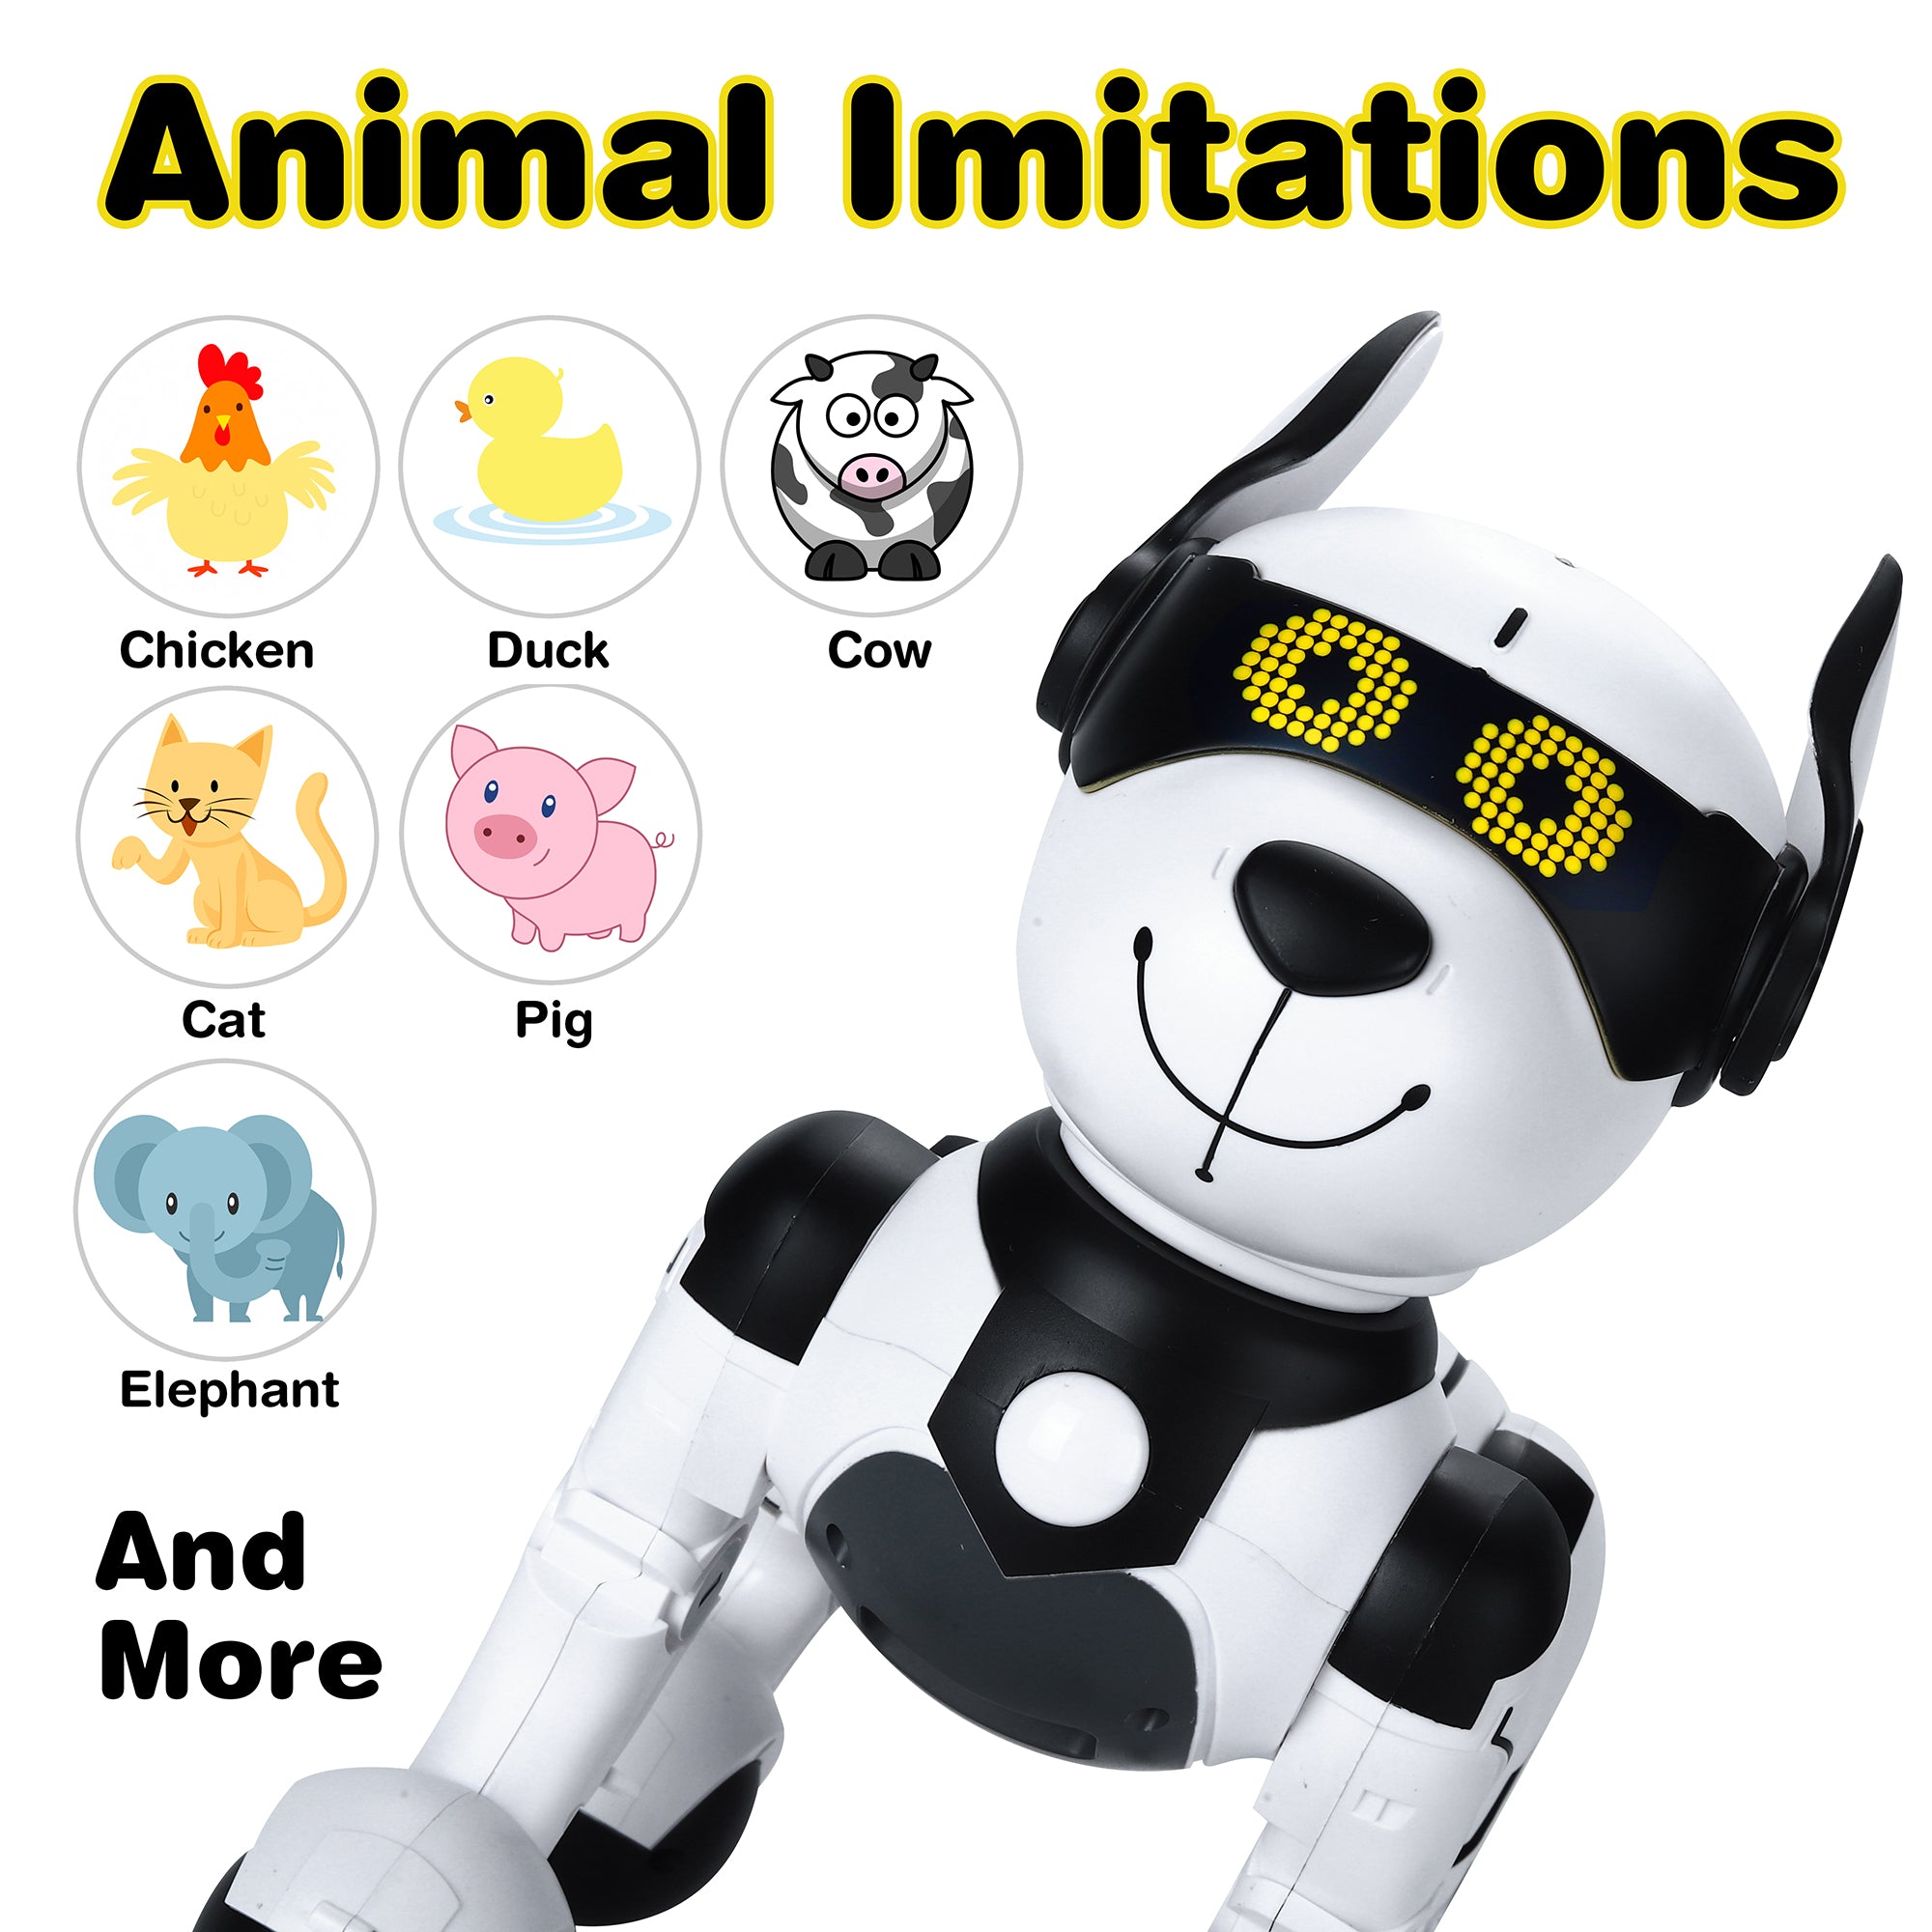 Lavet til at huske Lejlighedsvis arbejdsløshed Contixo R4 Smart Interactive IntelliPup Robot Dog Toy for Kids